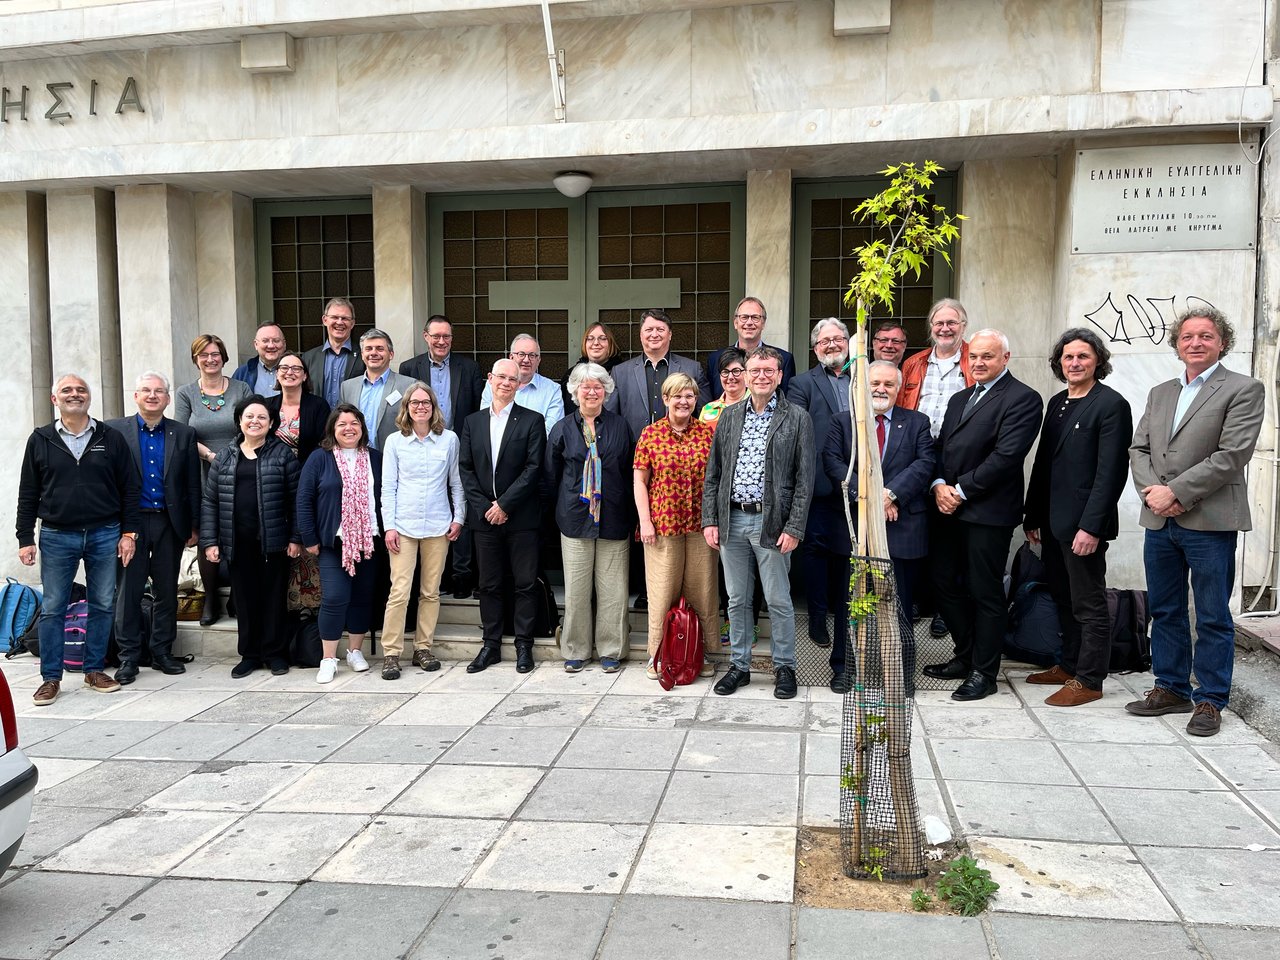 A Református Egyházak Világközösségének Európai Területi Tanácsa ülése május 4-5-én Szalonikiben Fotó: soterios boukis